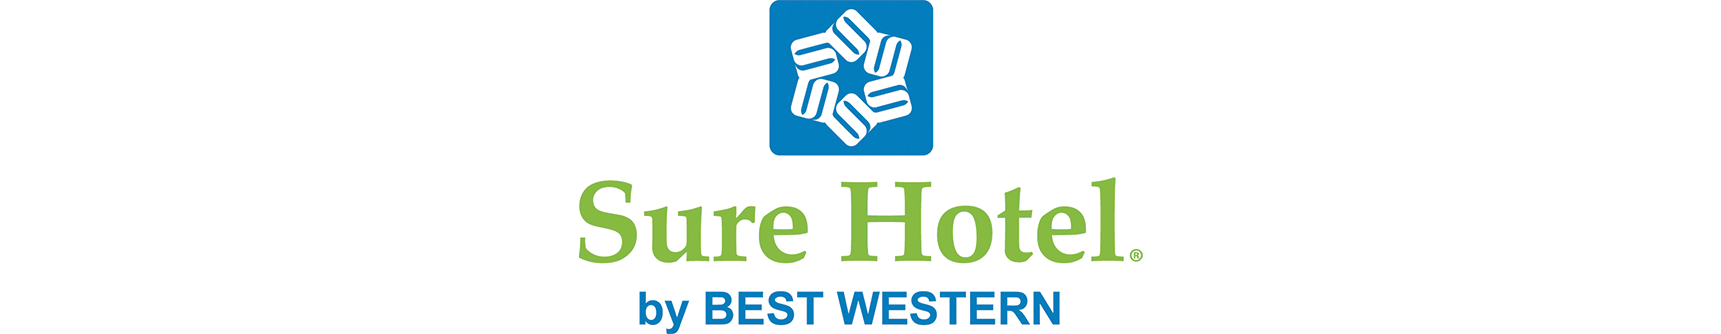 Sure Hotel Logo